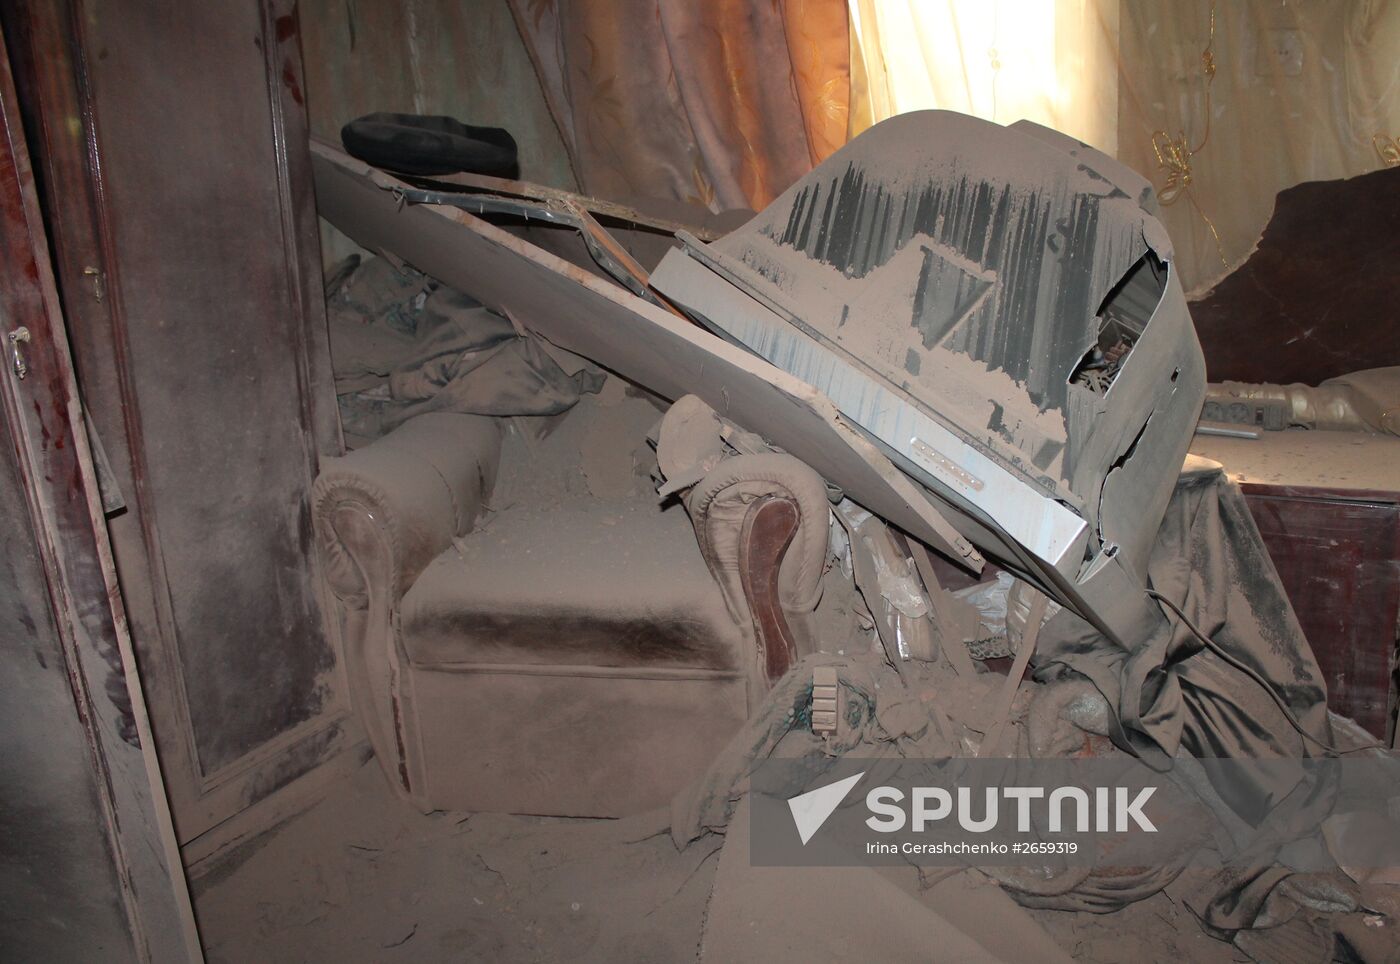 Aftermath of Gorlovka shelling, Donetsk region